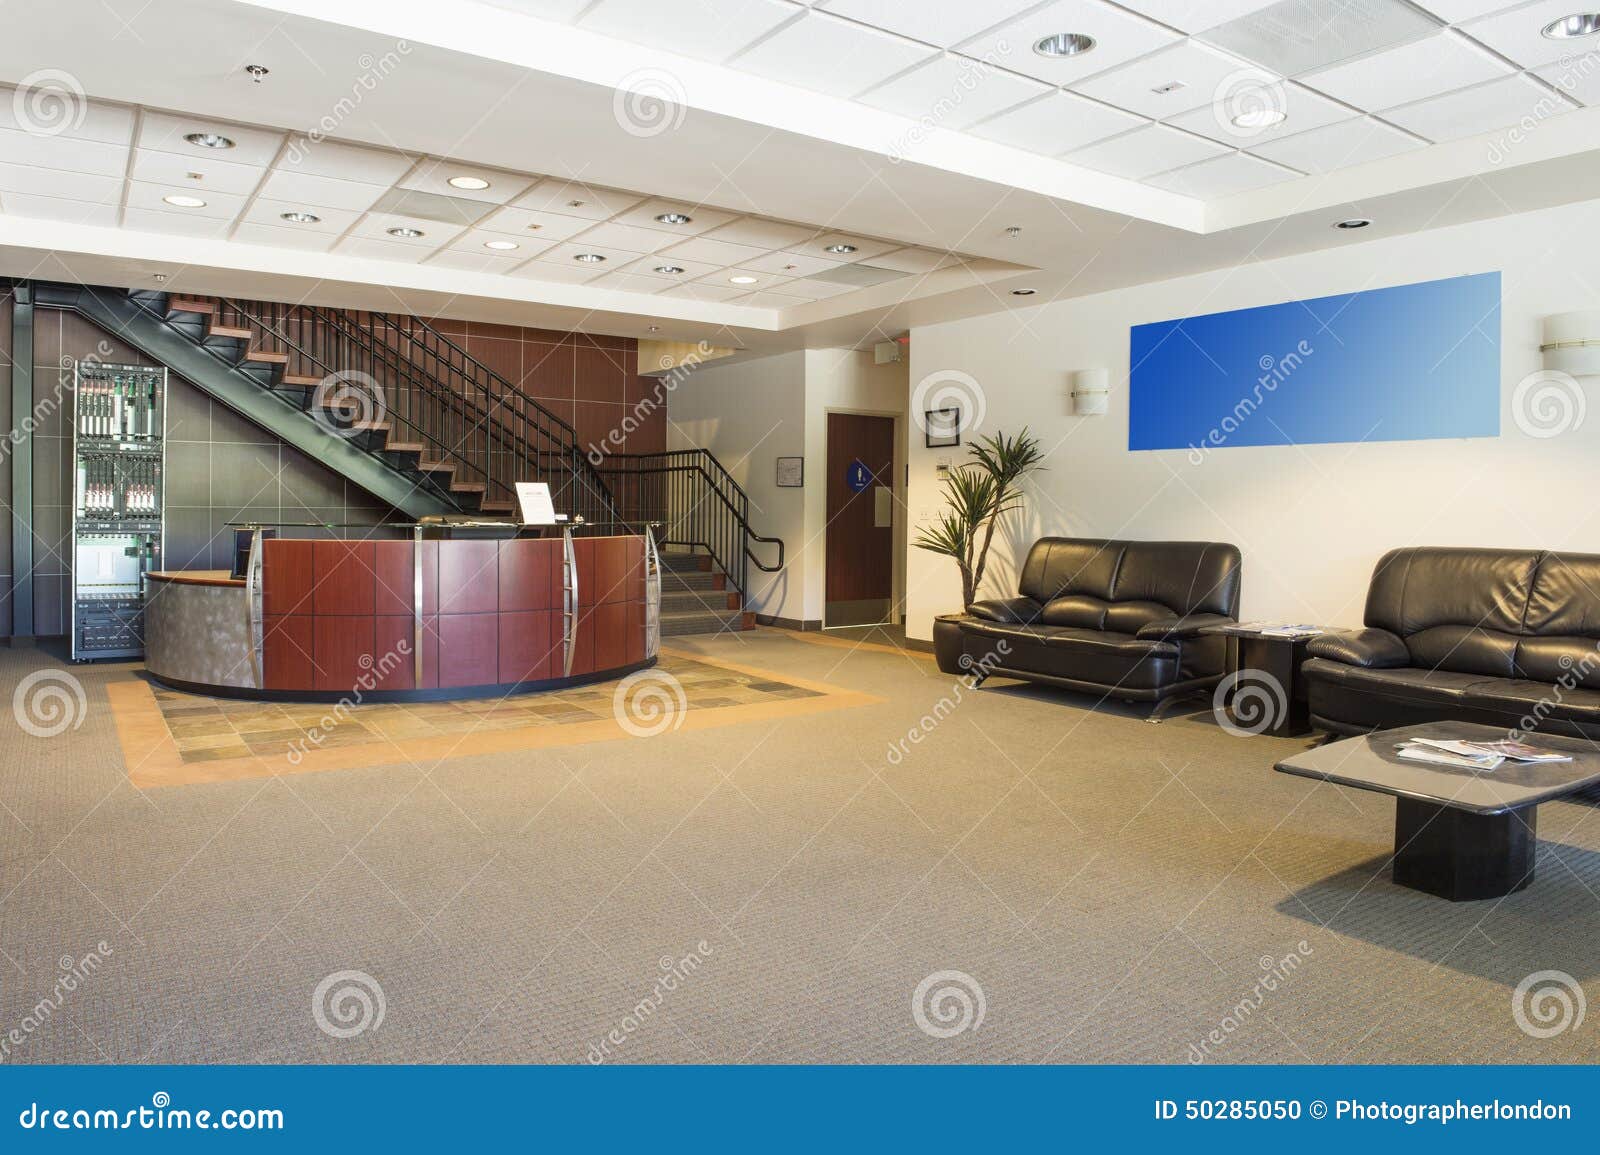 spacious office lobby